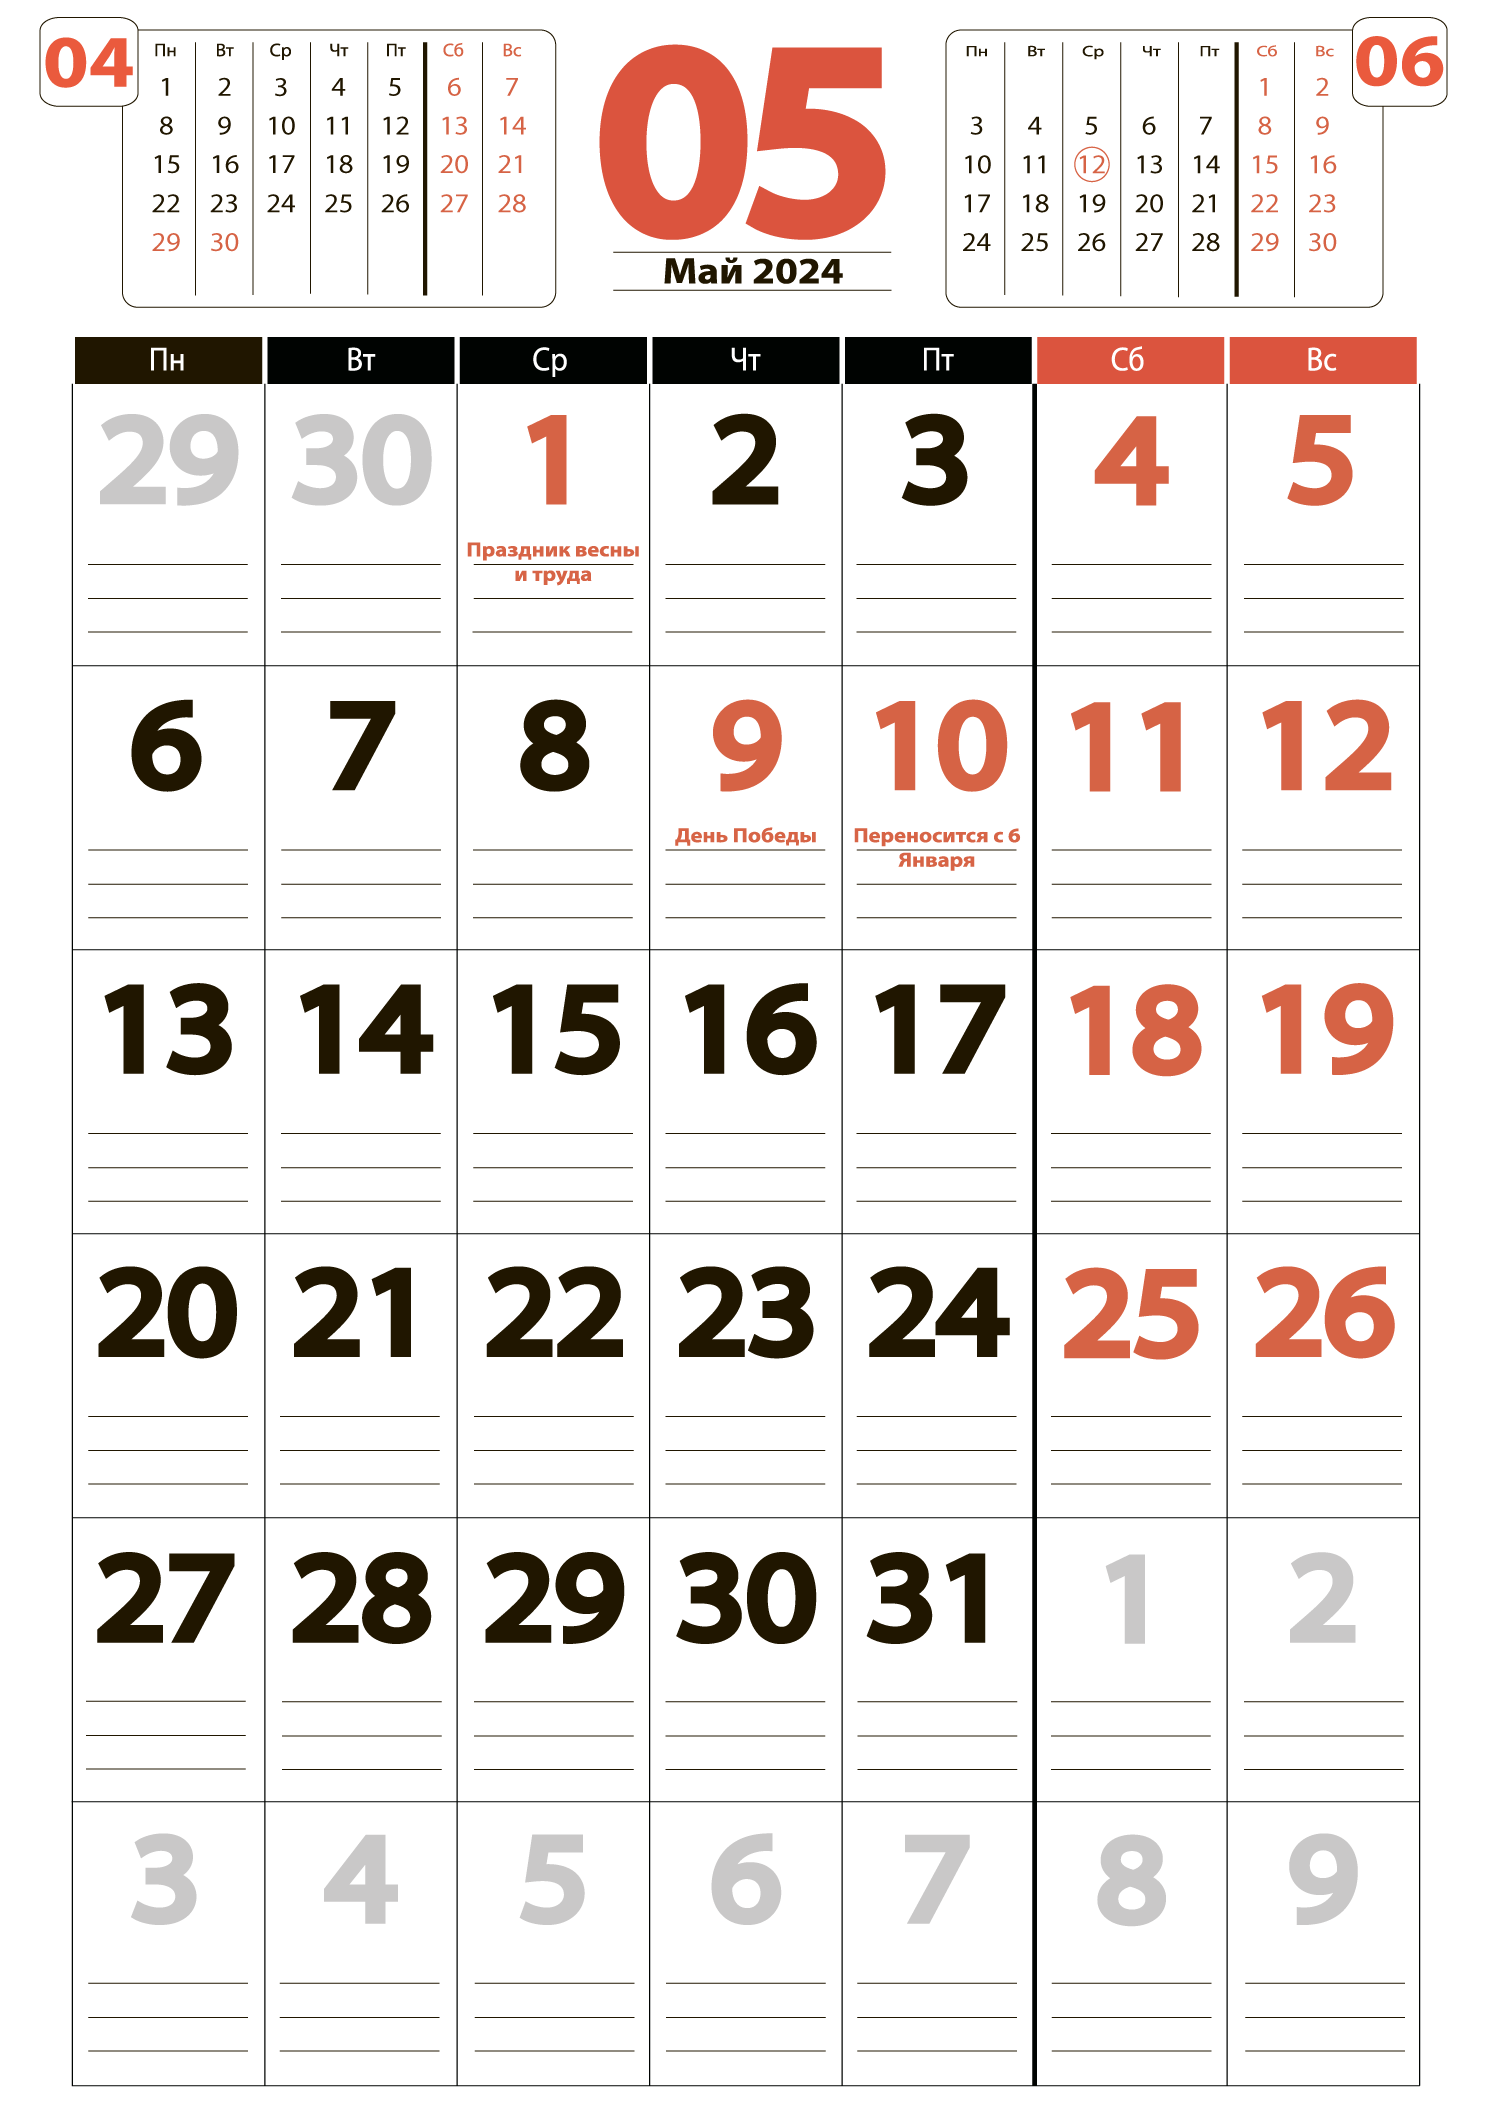 Печать крупного календаря на май 2024